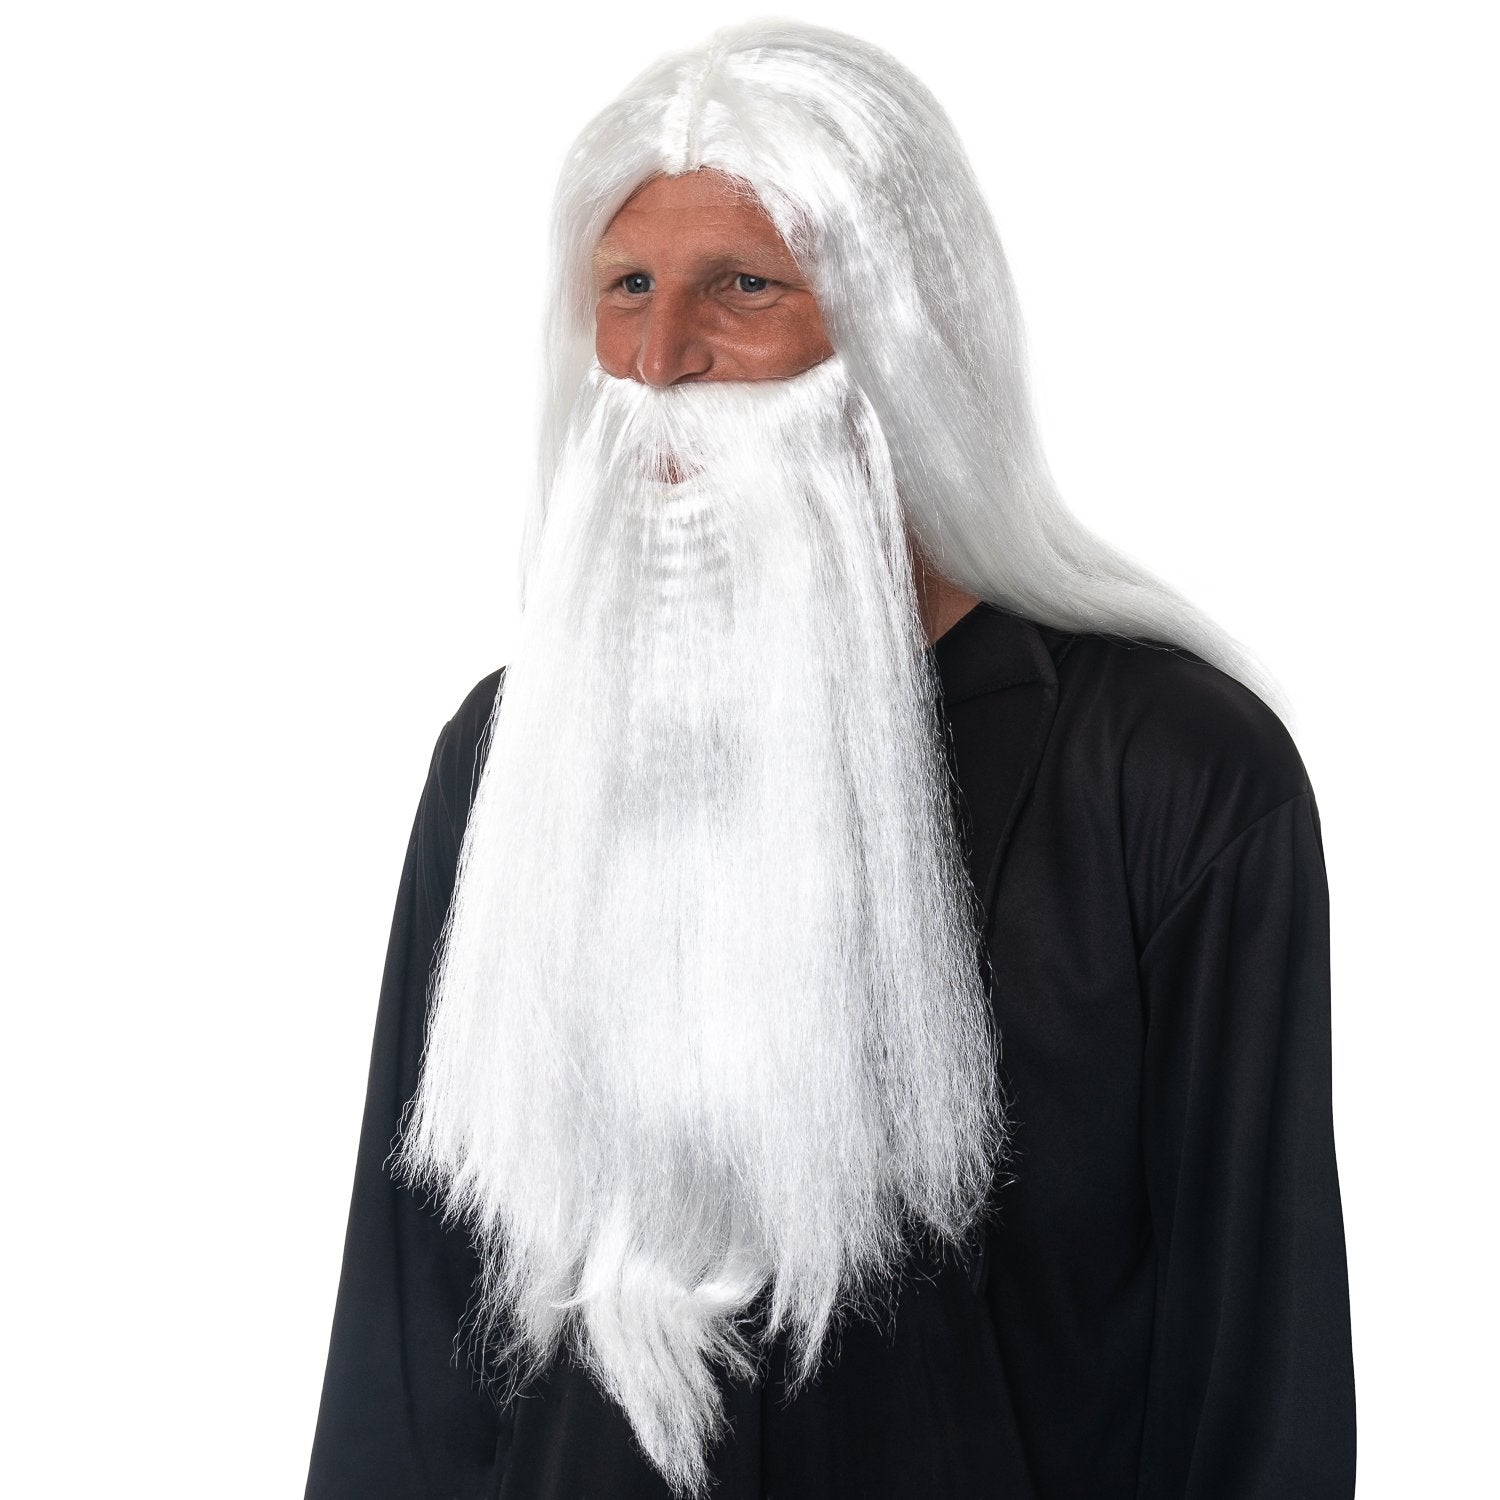 wizard-dumledore-wig.jpg